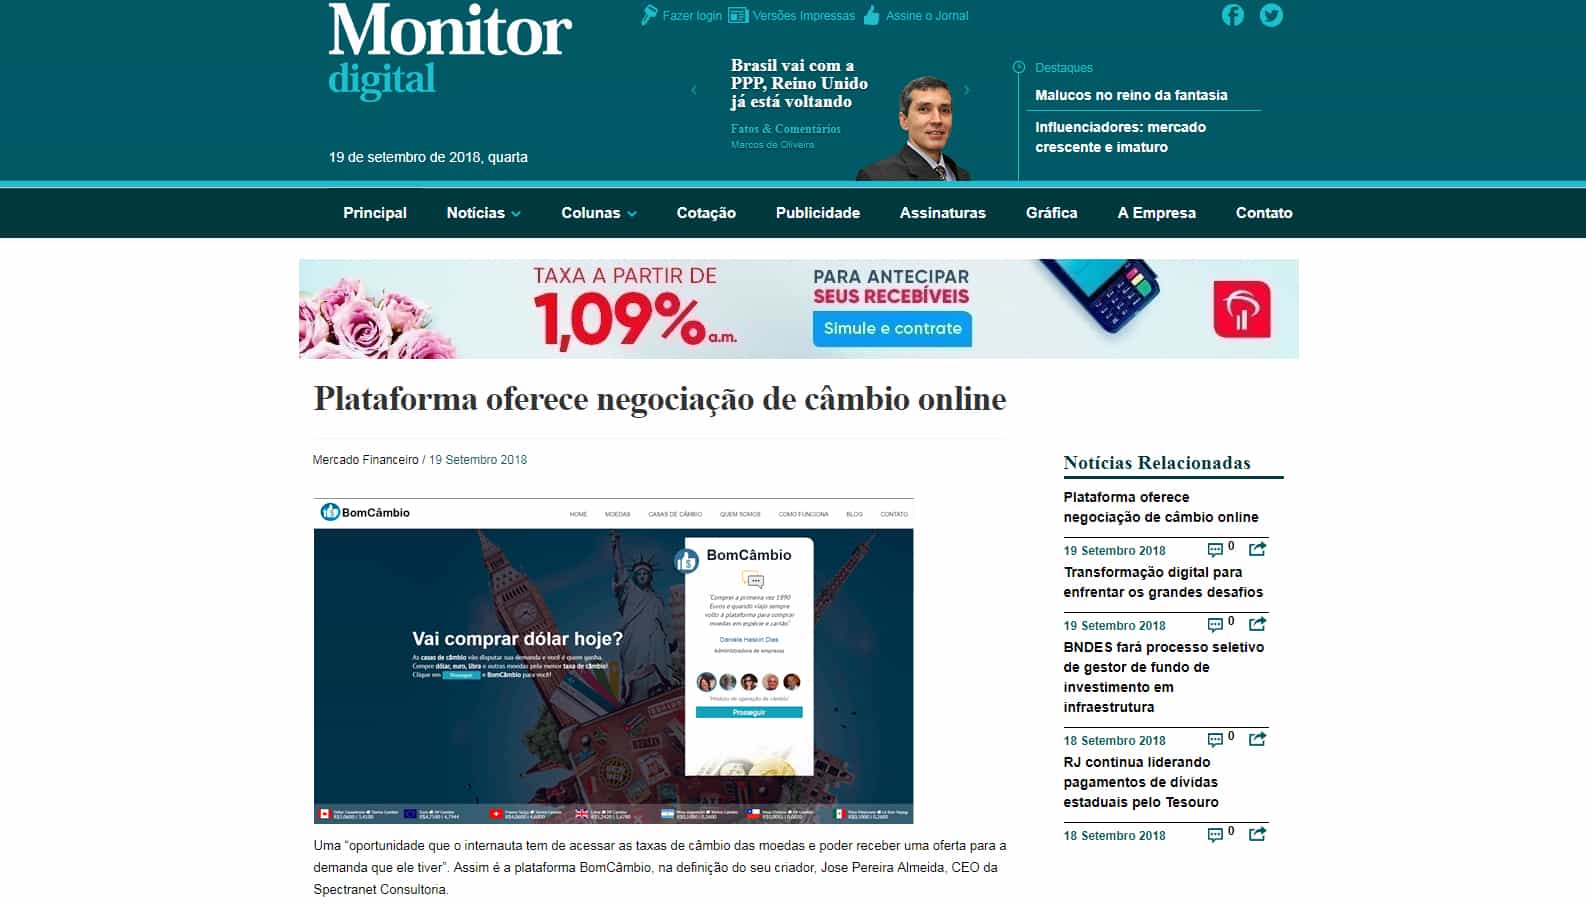 Na mídia - Confira no Jornal Monitor Digital matéria sobre a Plataforma BomCâmbio